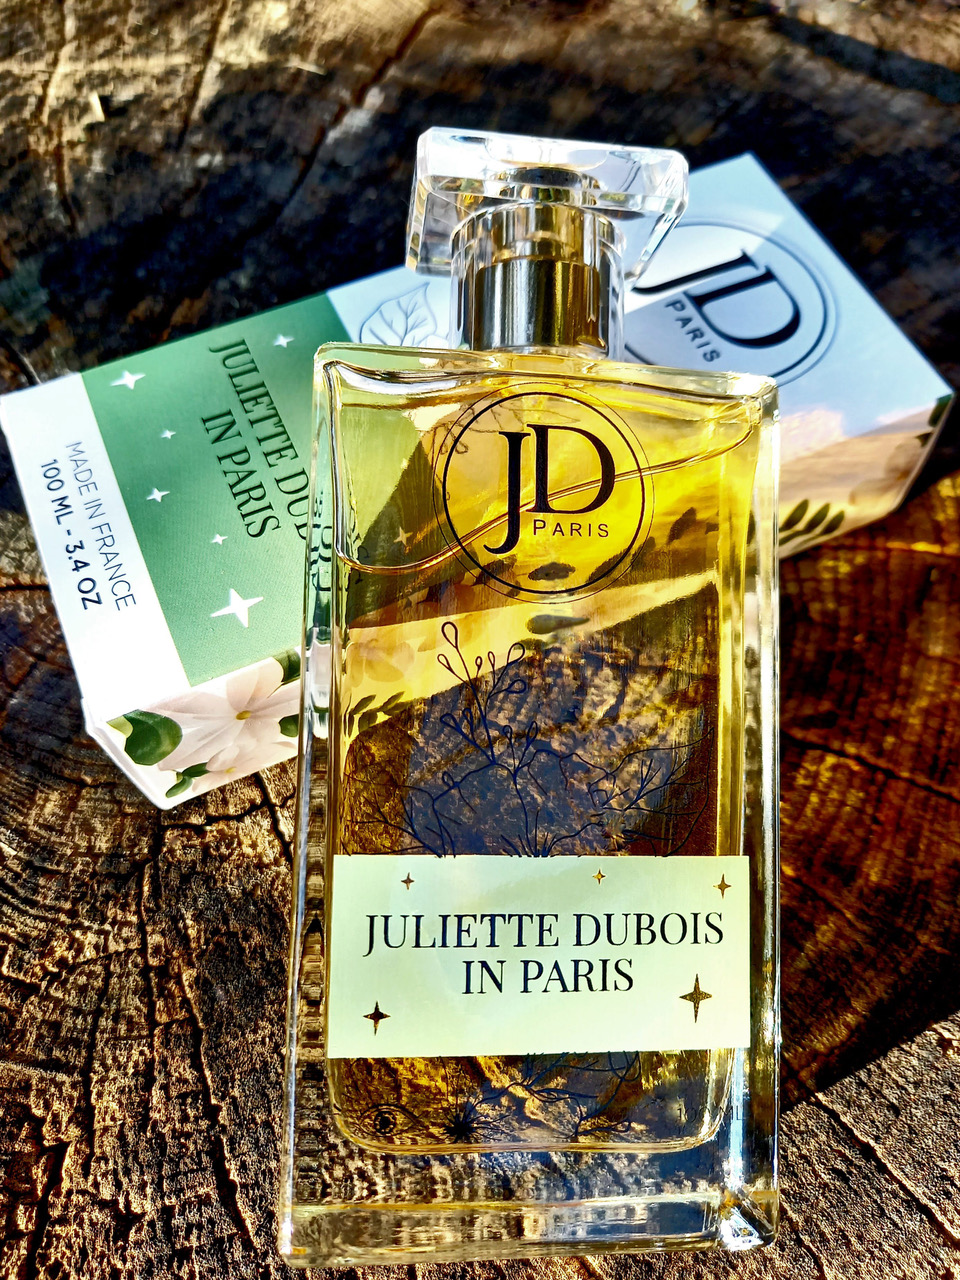 Juliette Dubois in Paris by JD Paris - 100 ml